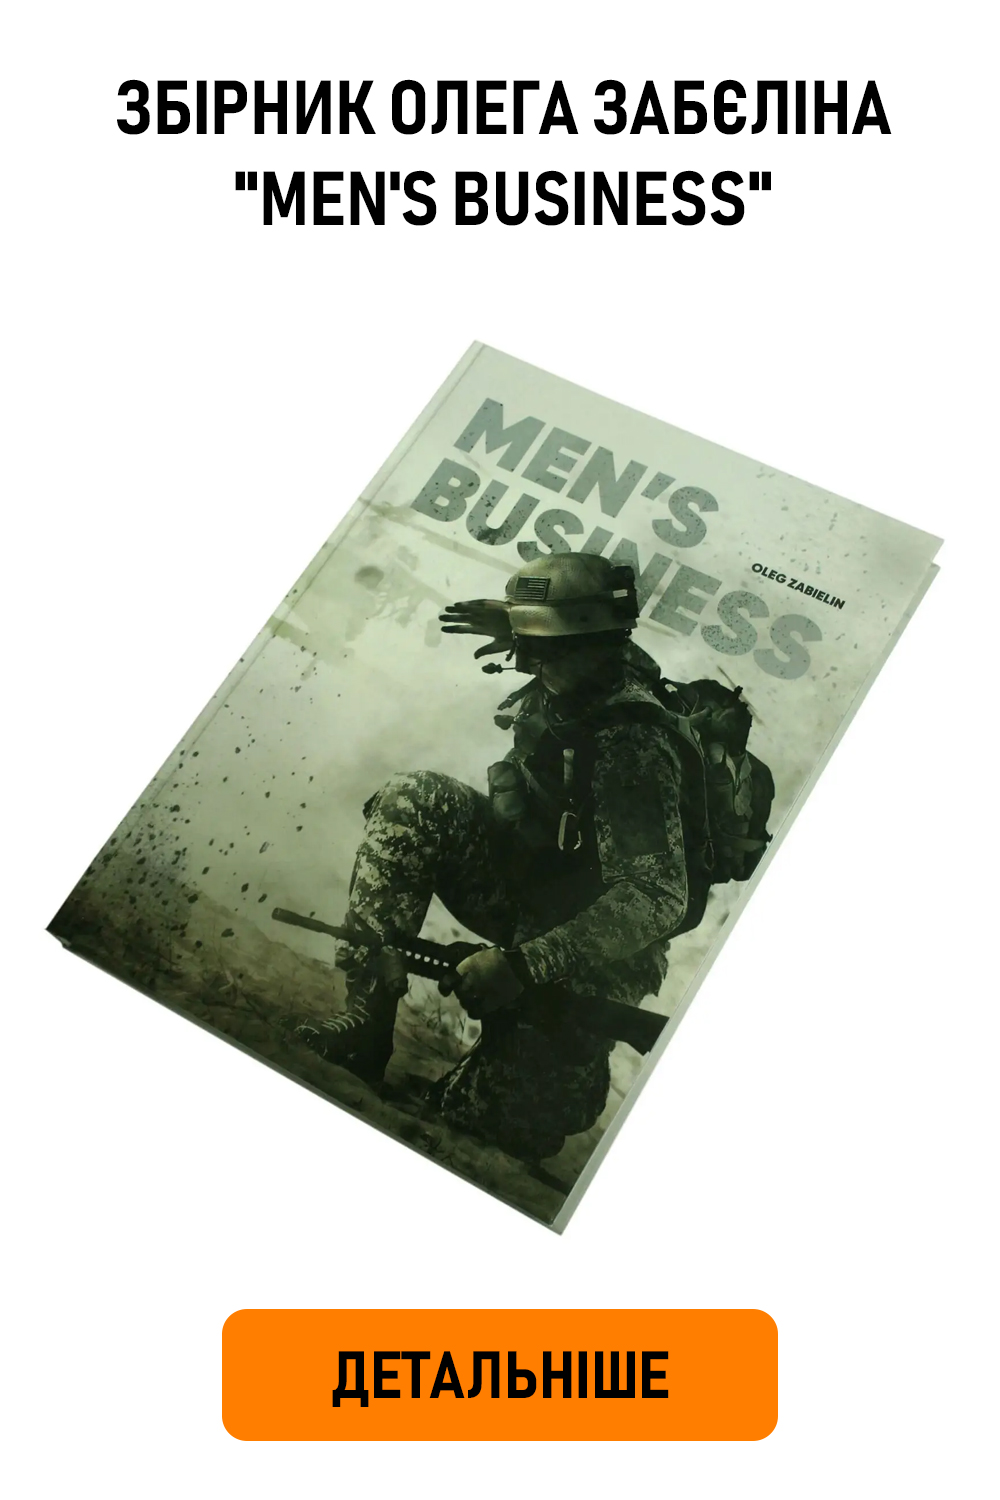 Збірник авторських робіт художньої військової фотографії Олега Забєліна "Men's Business"